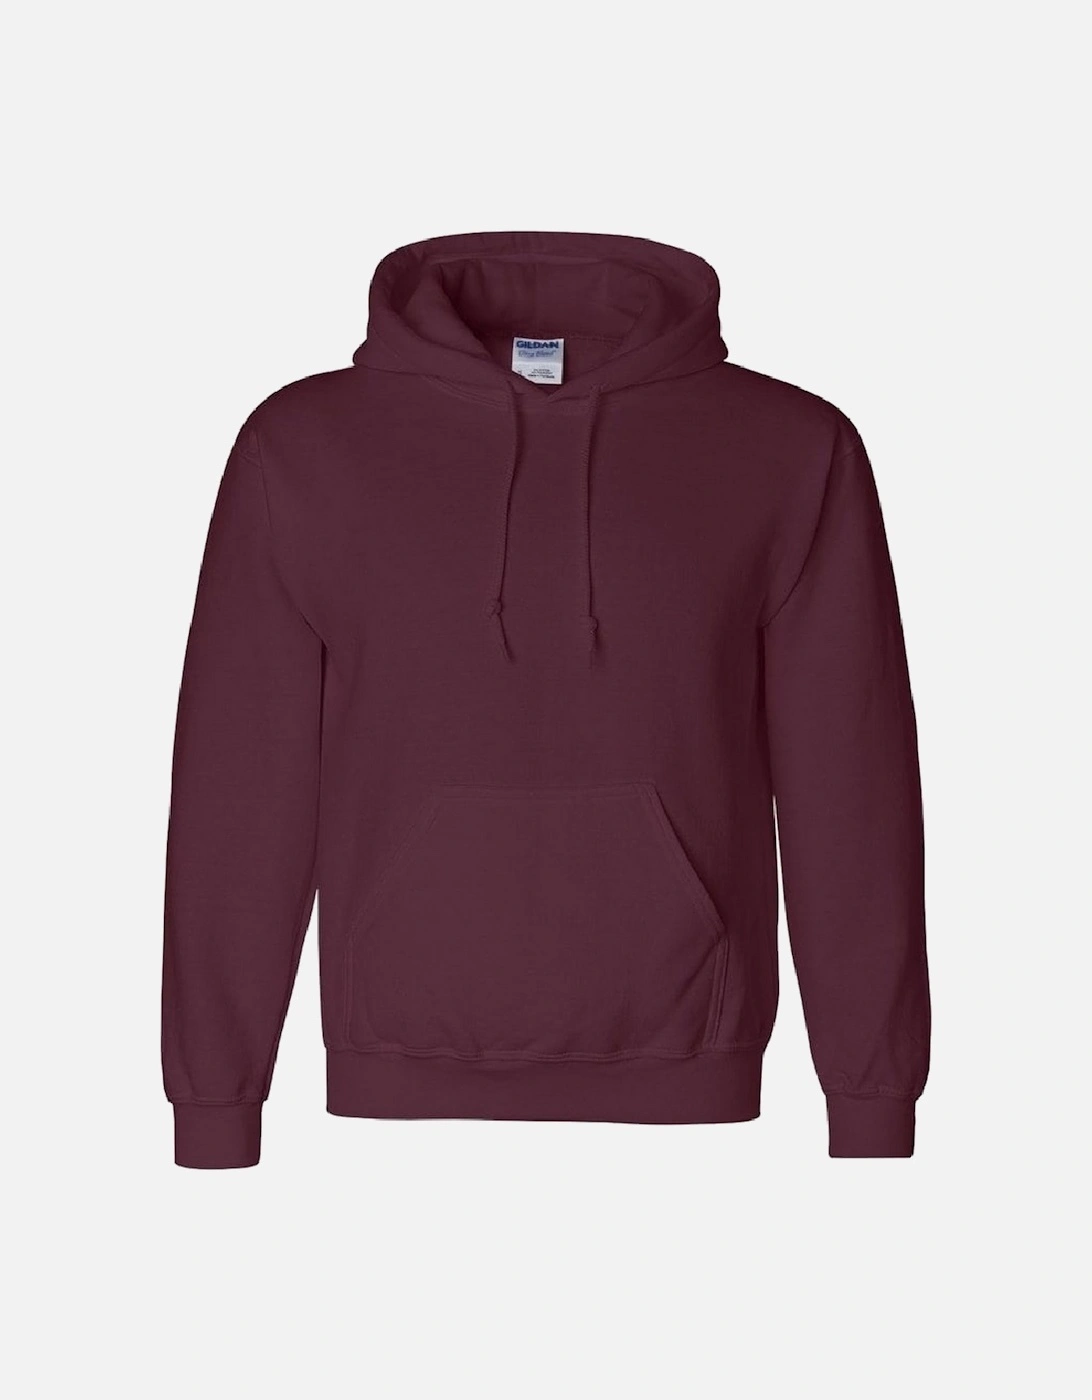 Heavyweight DryBlend Adult Unisex Hooded Sweatshirt Top / Hoodie (13 Colours), 6 of 5